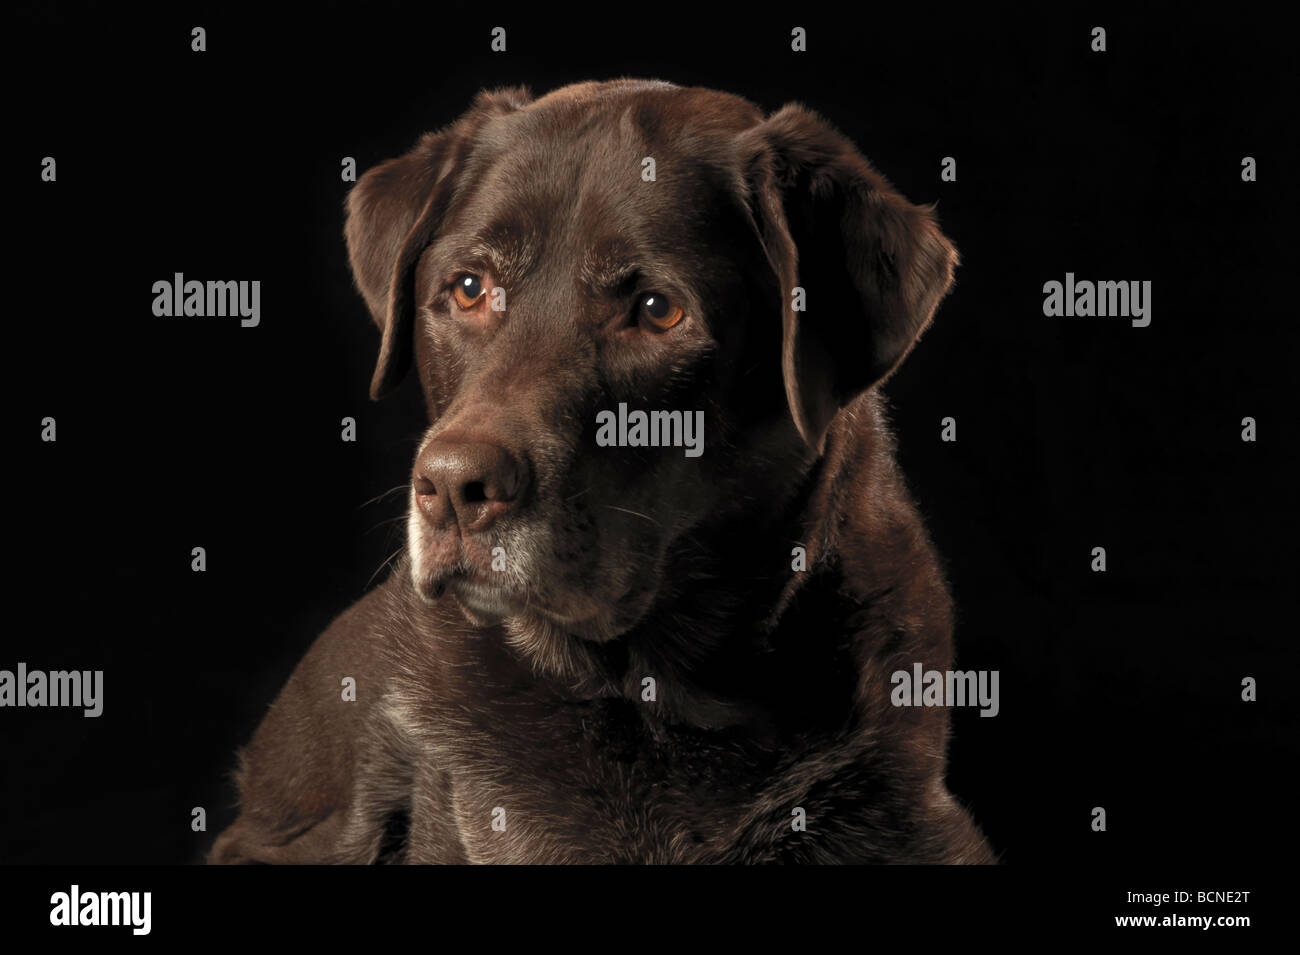 Portrait of a chocolate Labrador Retriever against a black background Stock Photo